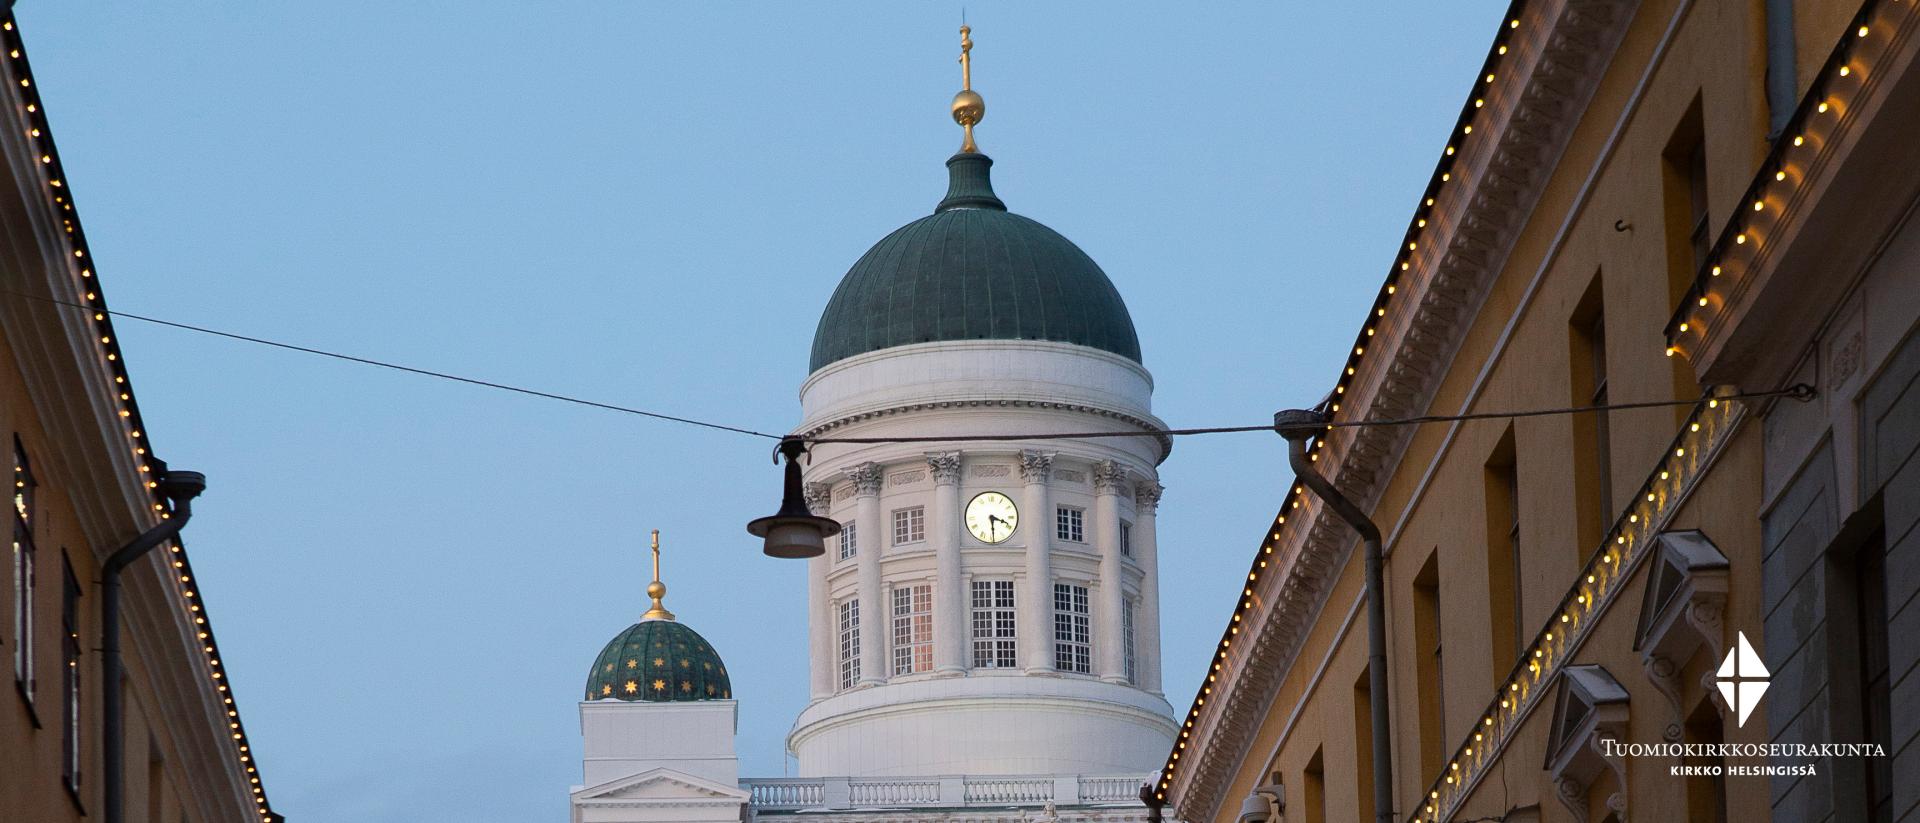 Kuvassa Kauppatorilta päin kuvattuna jouluvalaistujen talojen välistä näkyvän Tuomiokirkon tornia ja yksi kupoleista.